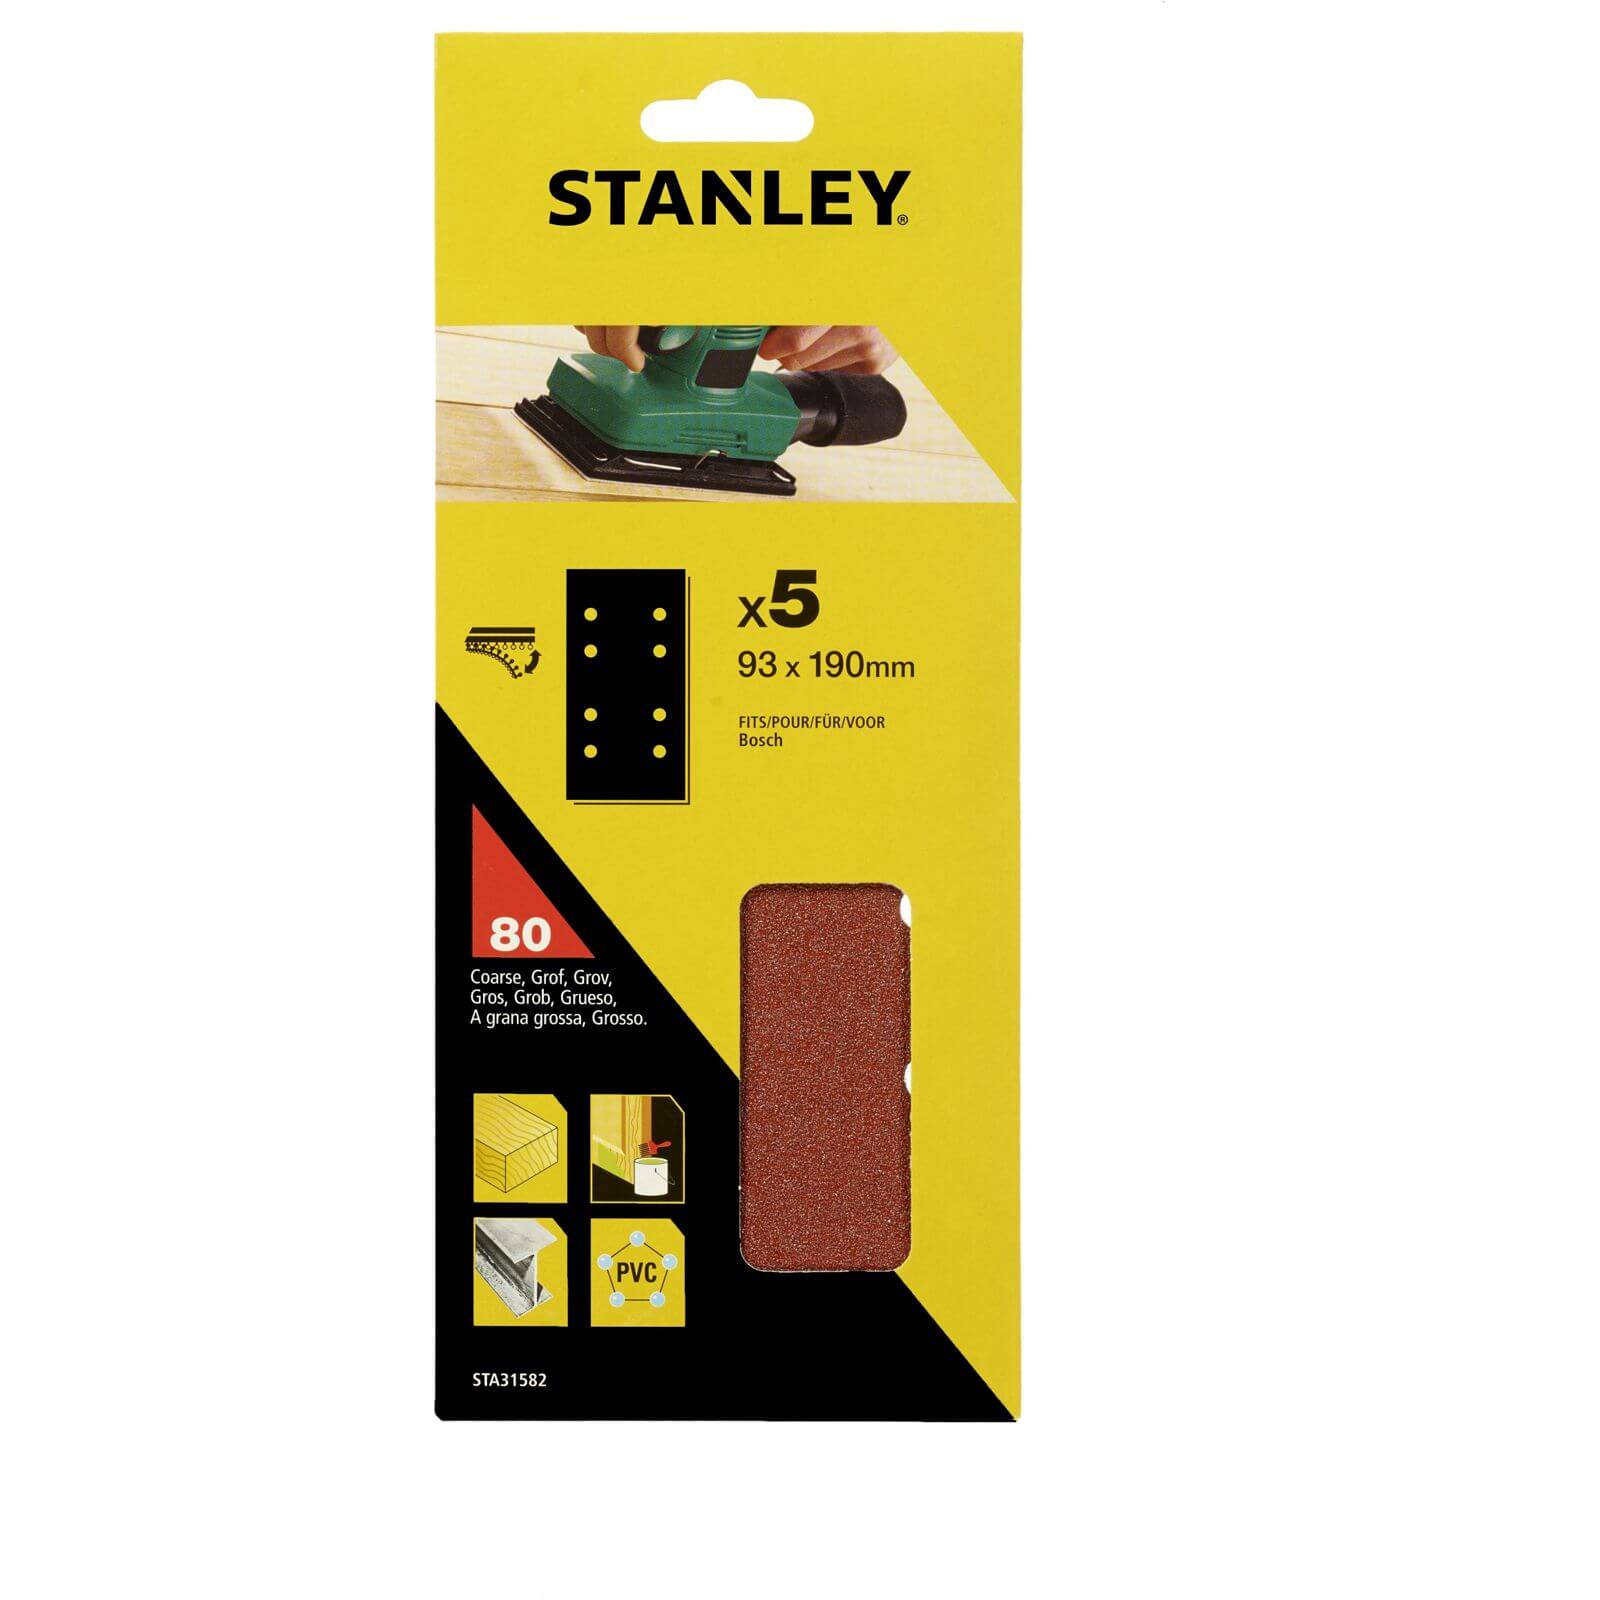 Stanley 1/3 Sheet Sander 80G Hook & Loop Sanding Sheets - STA31582-XJ